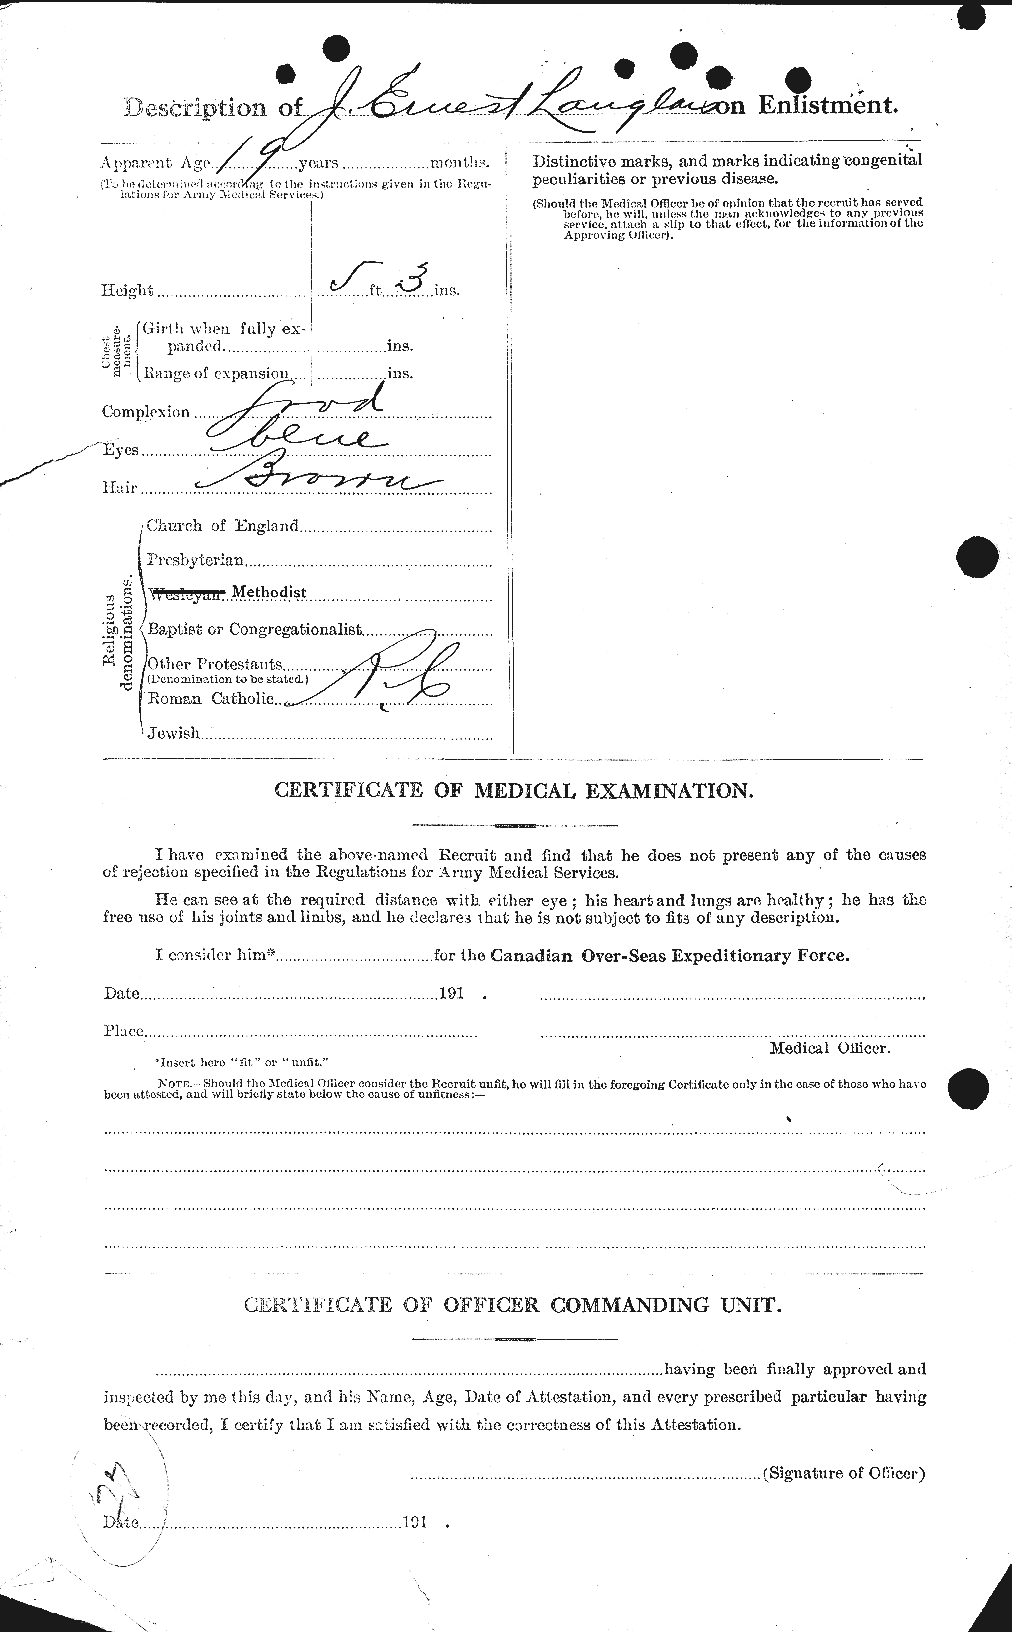 Dossiers du Personnel de la Première Guerre mondiale - CEC 447866b